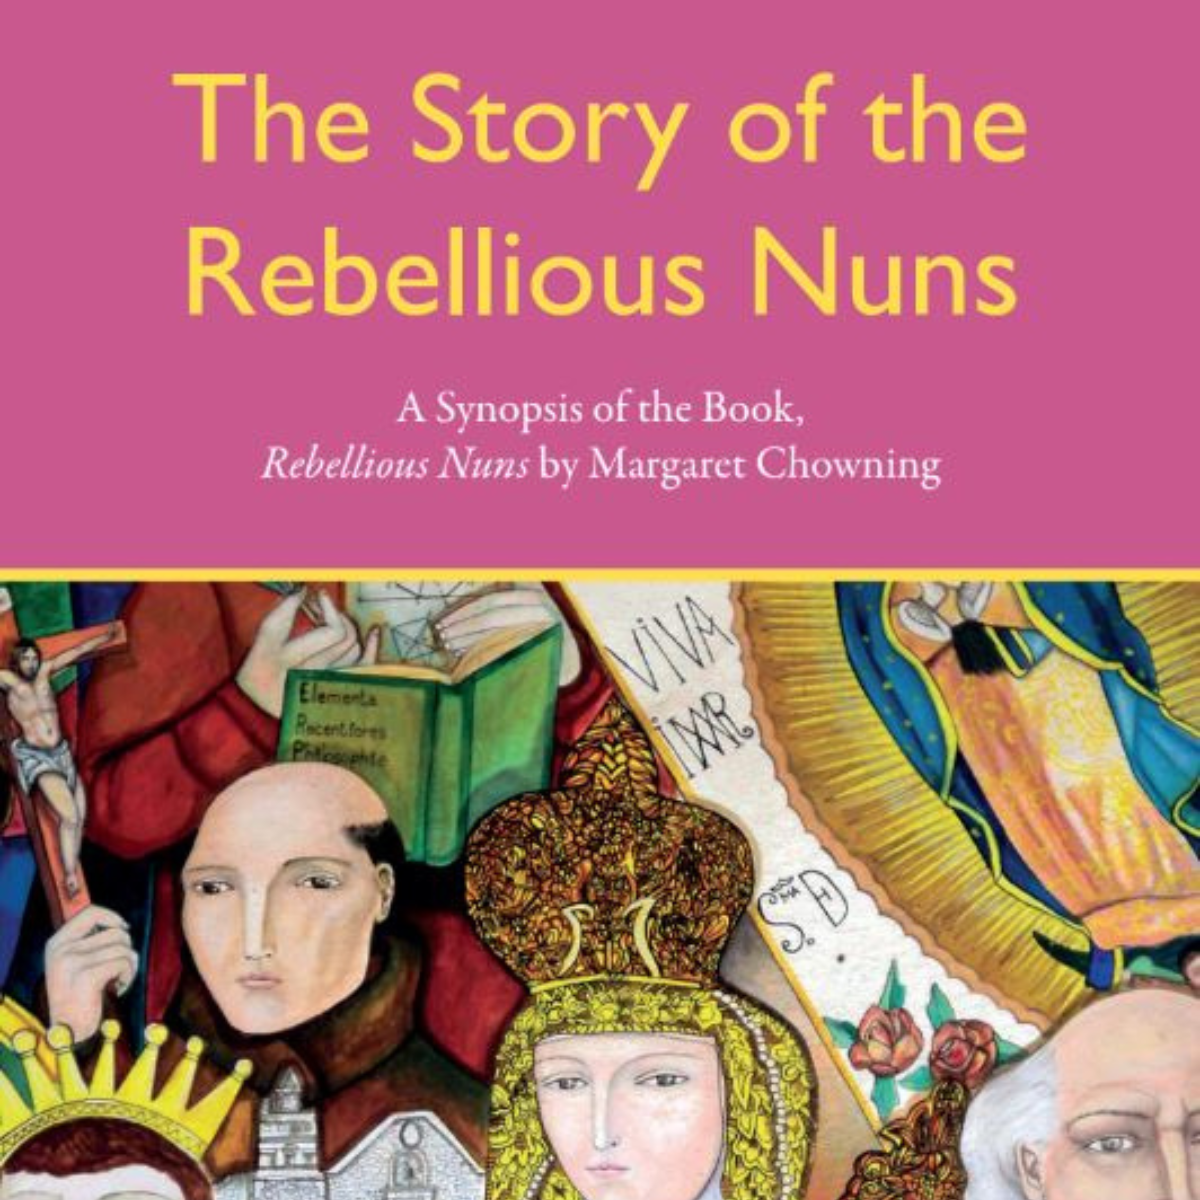 Rebellious Nuns Synopsis